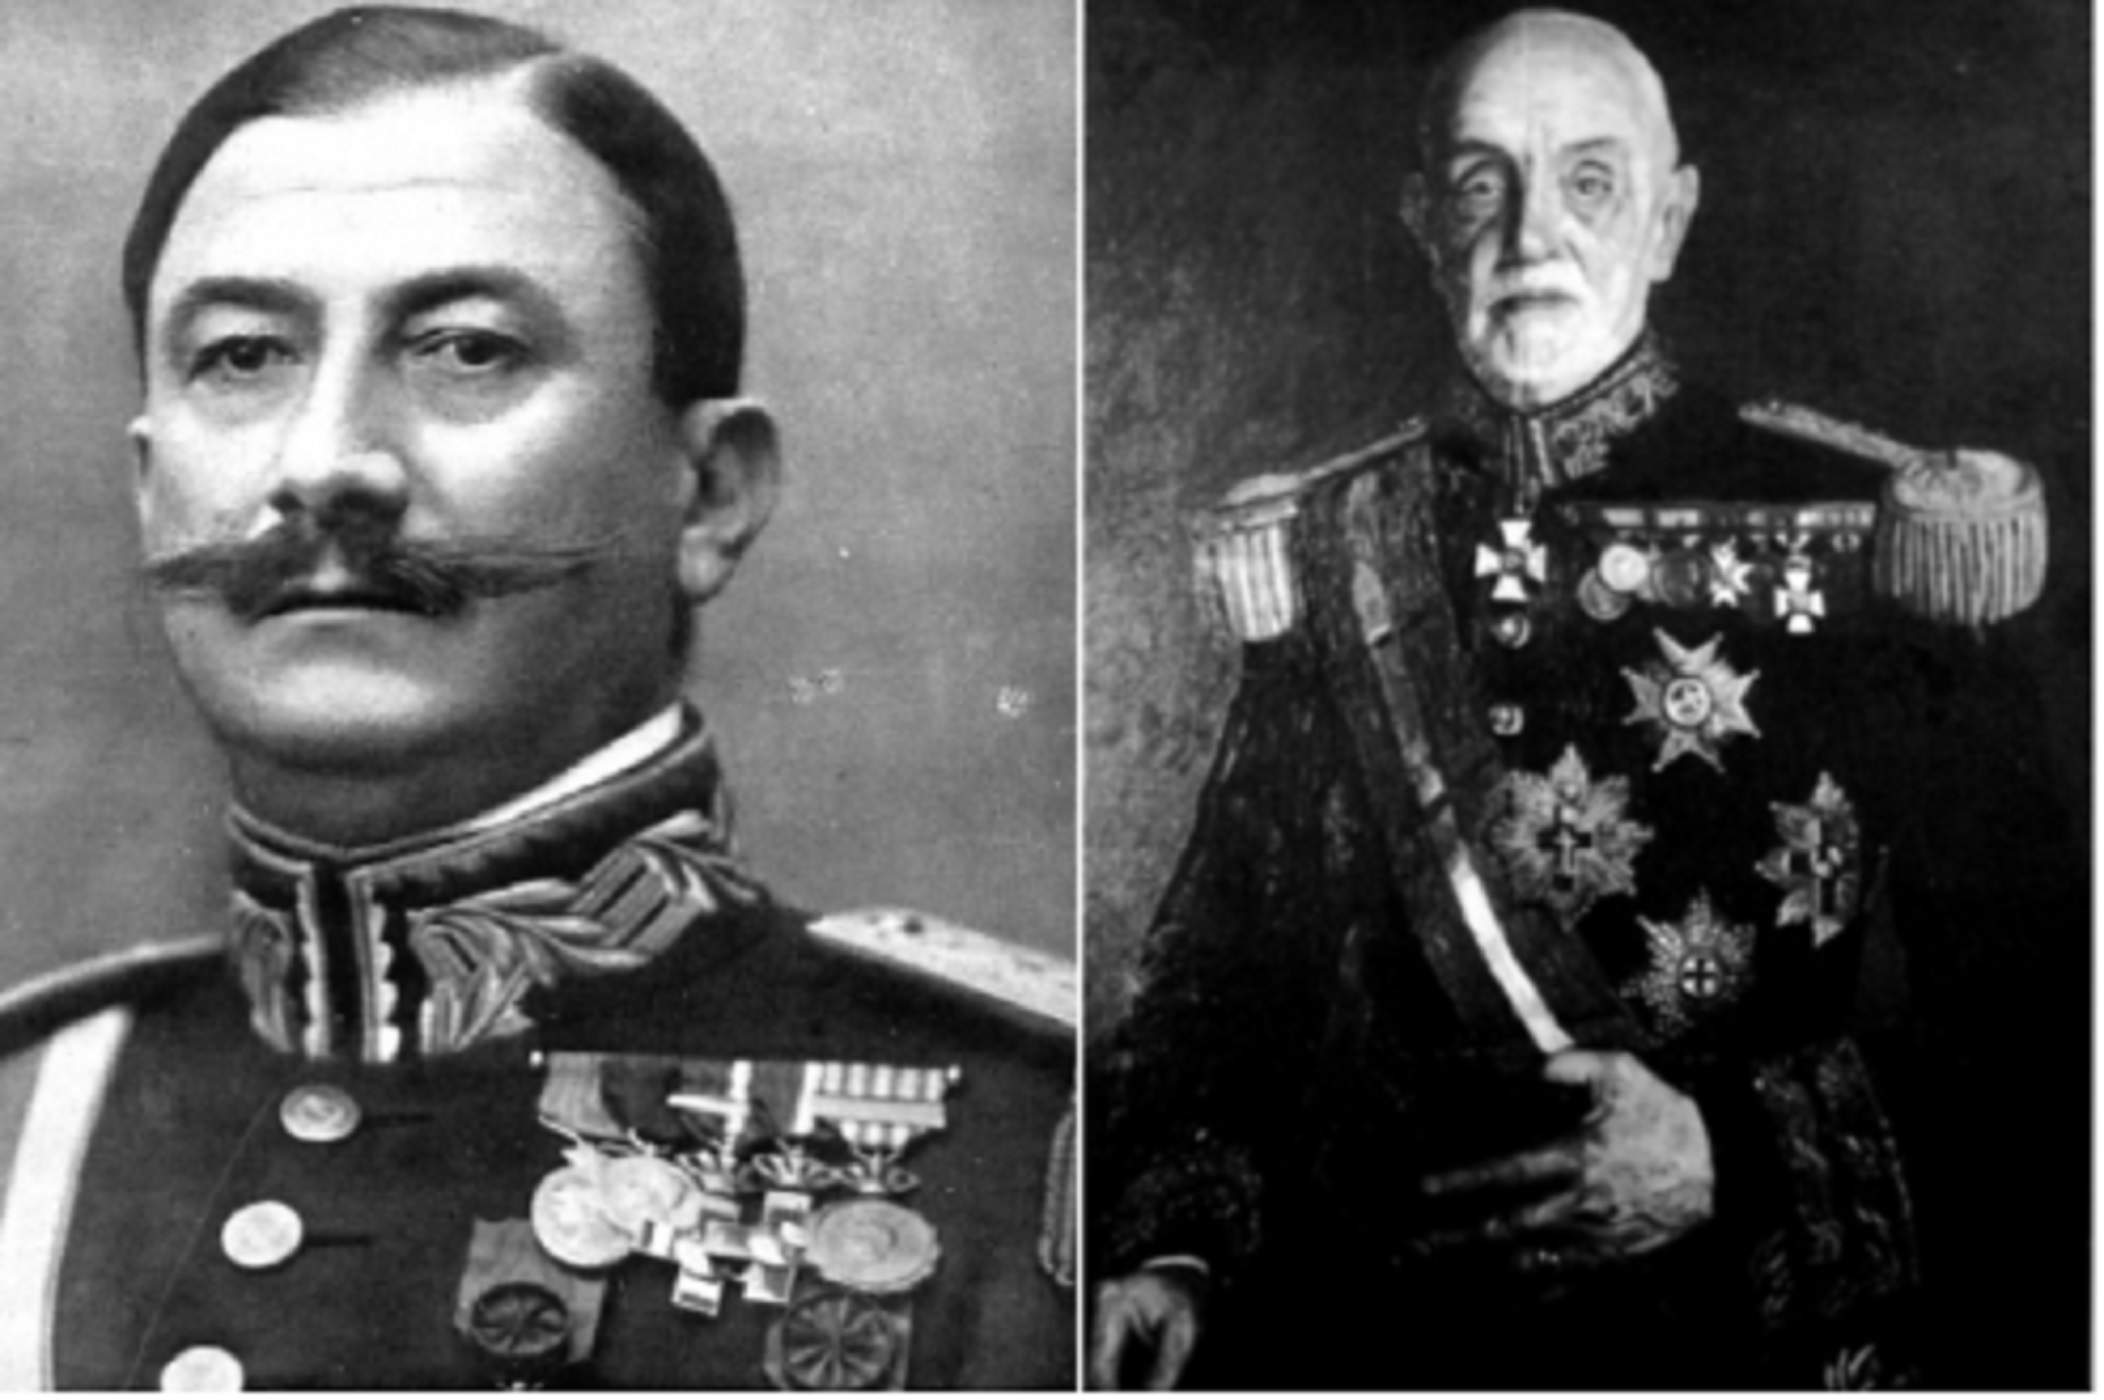 Los generales Berenguer i Despujol. Fuente Wikimedia Commons y My Heritage